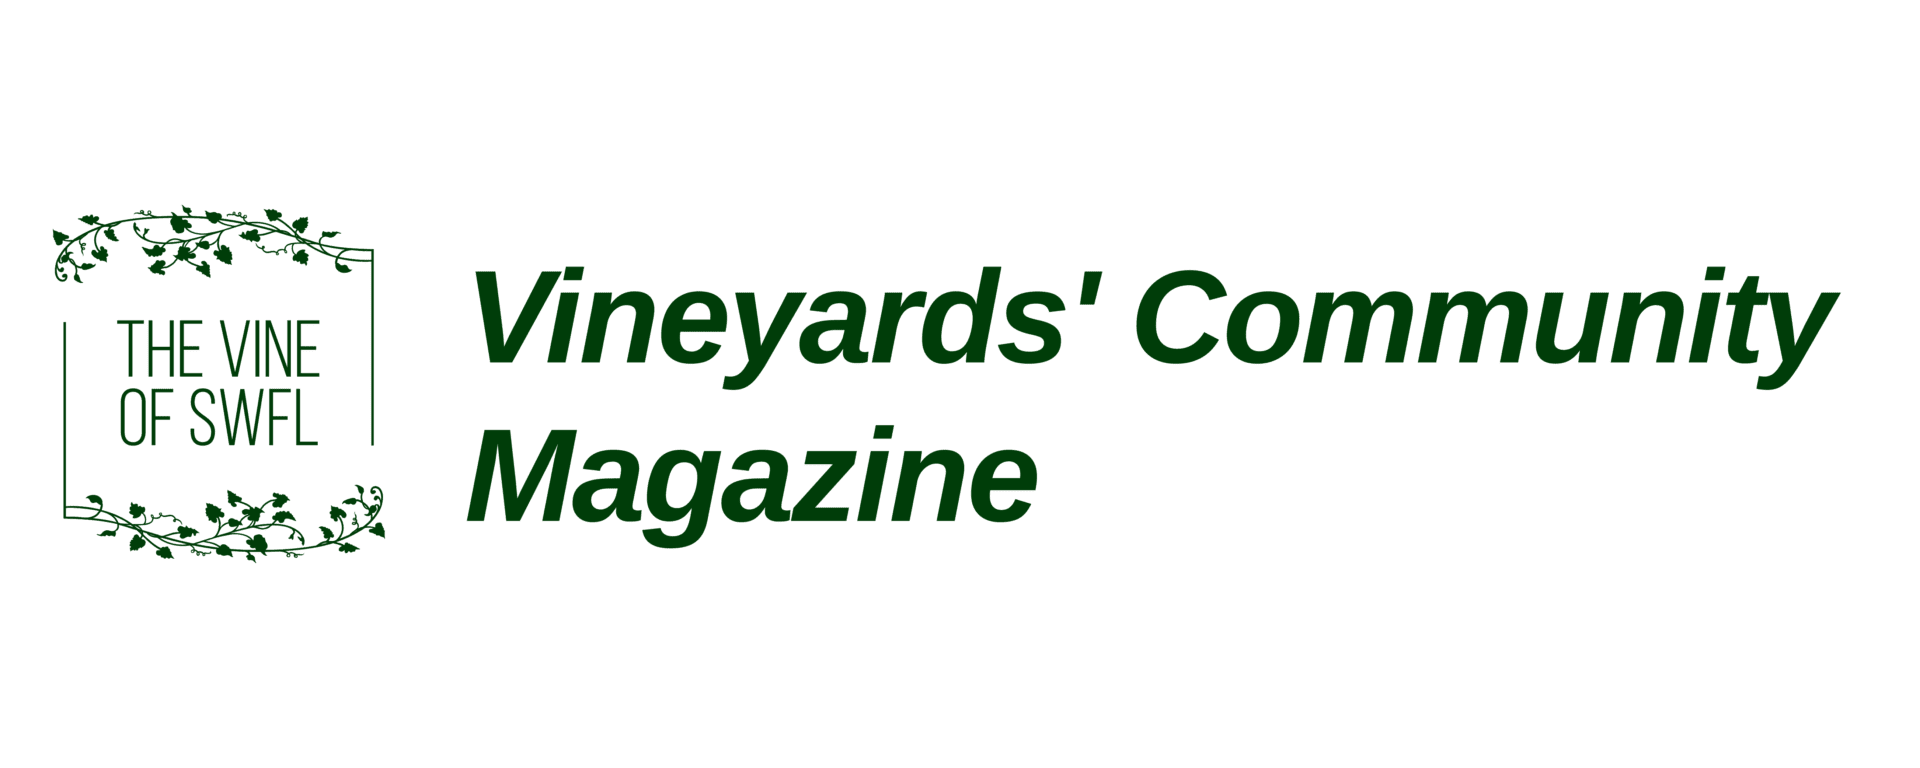 Vineyards Community Magazine logo